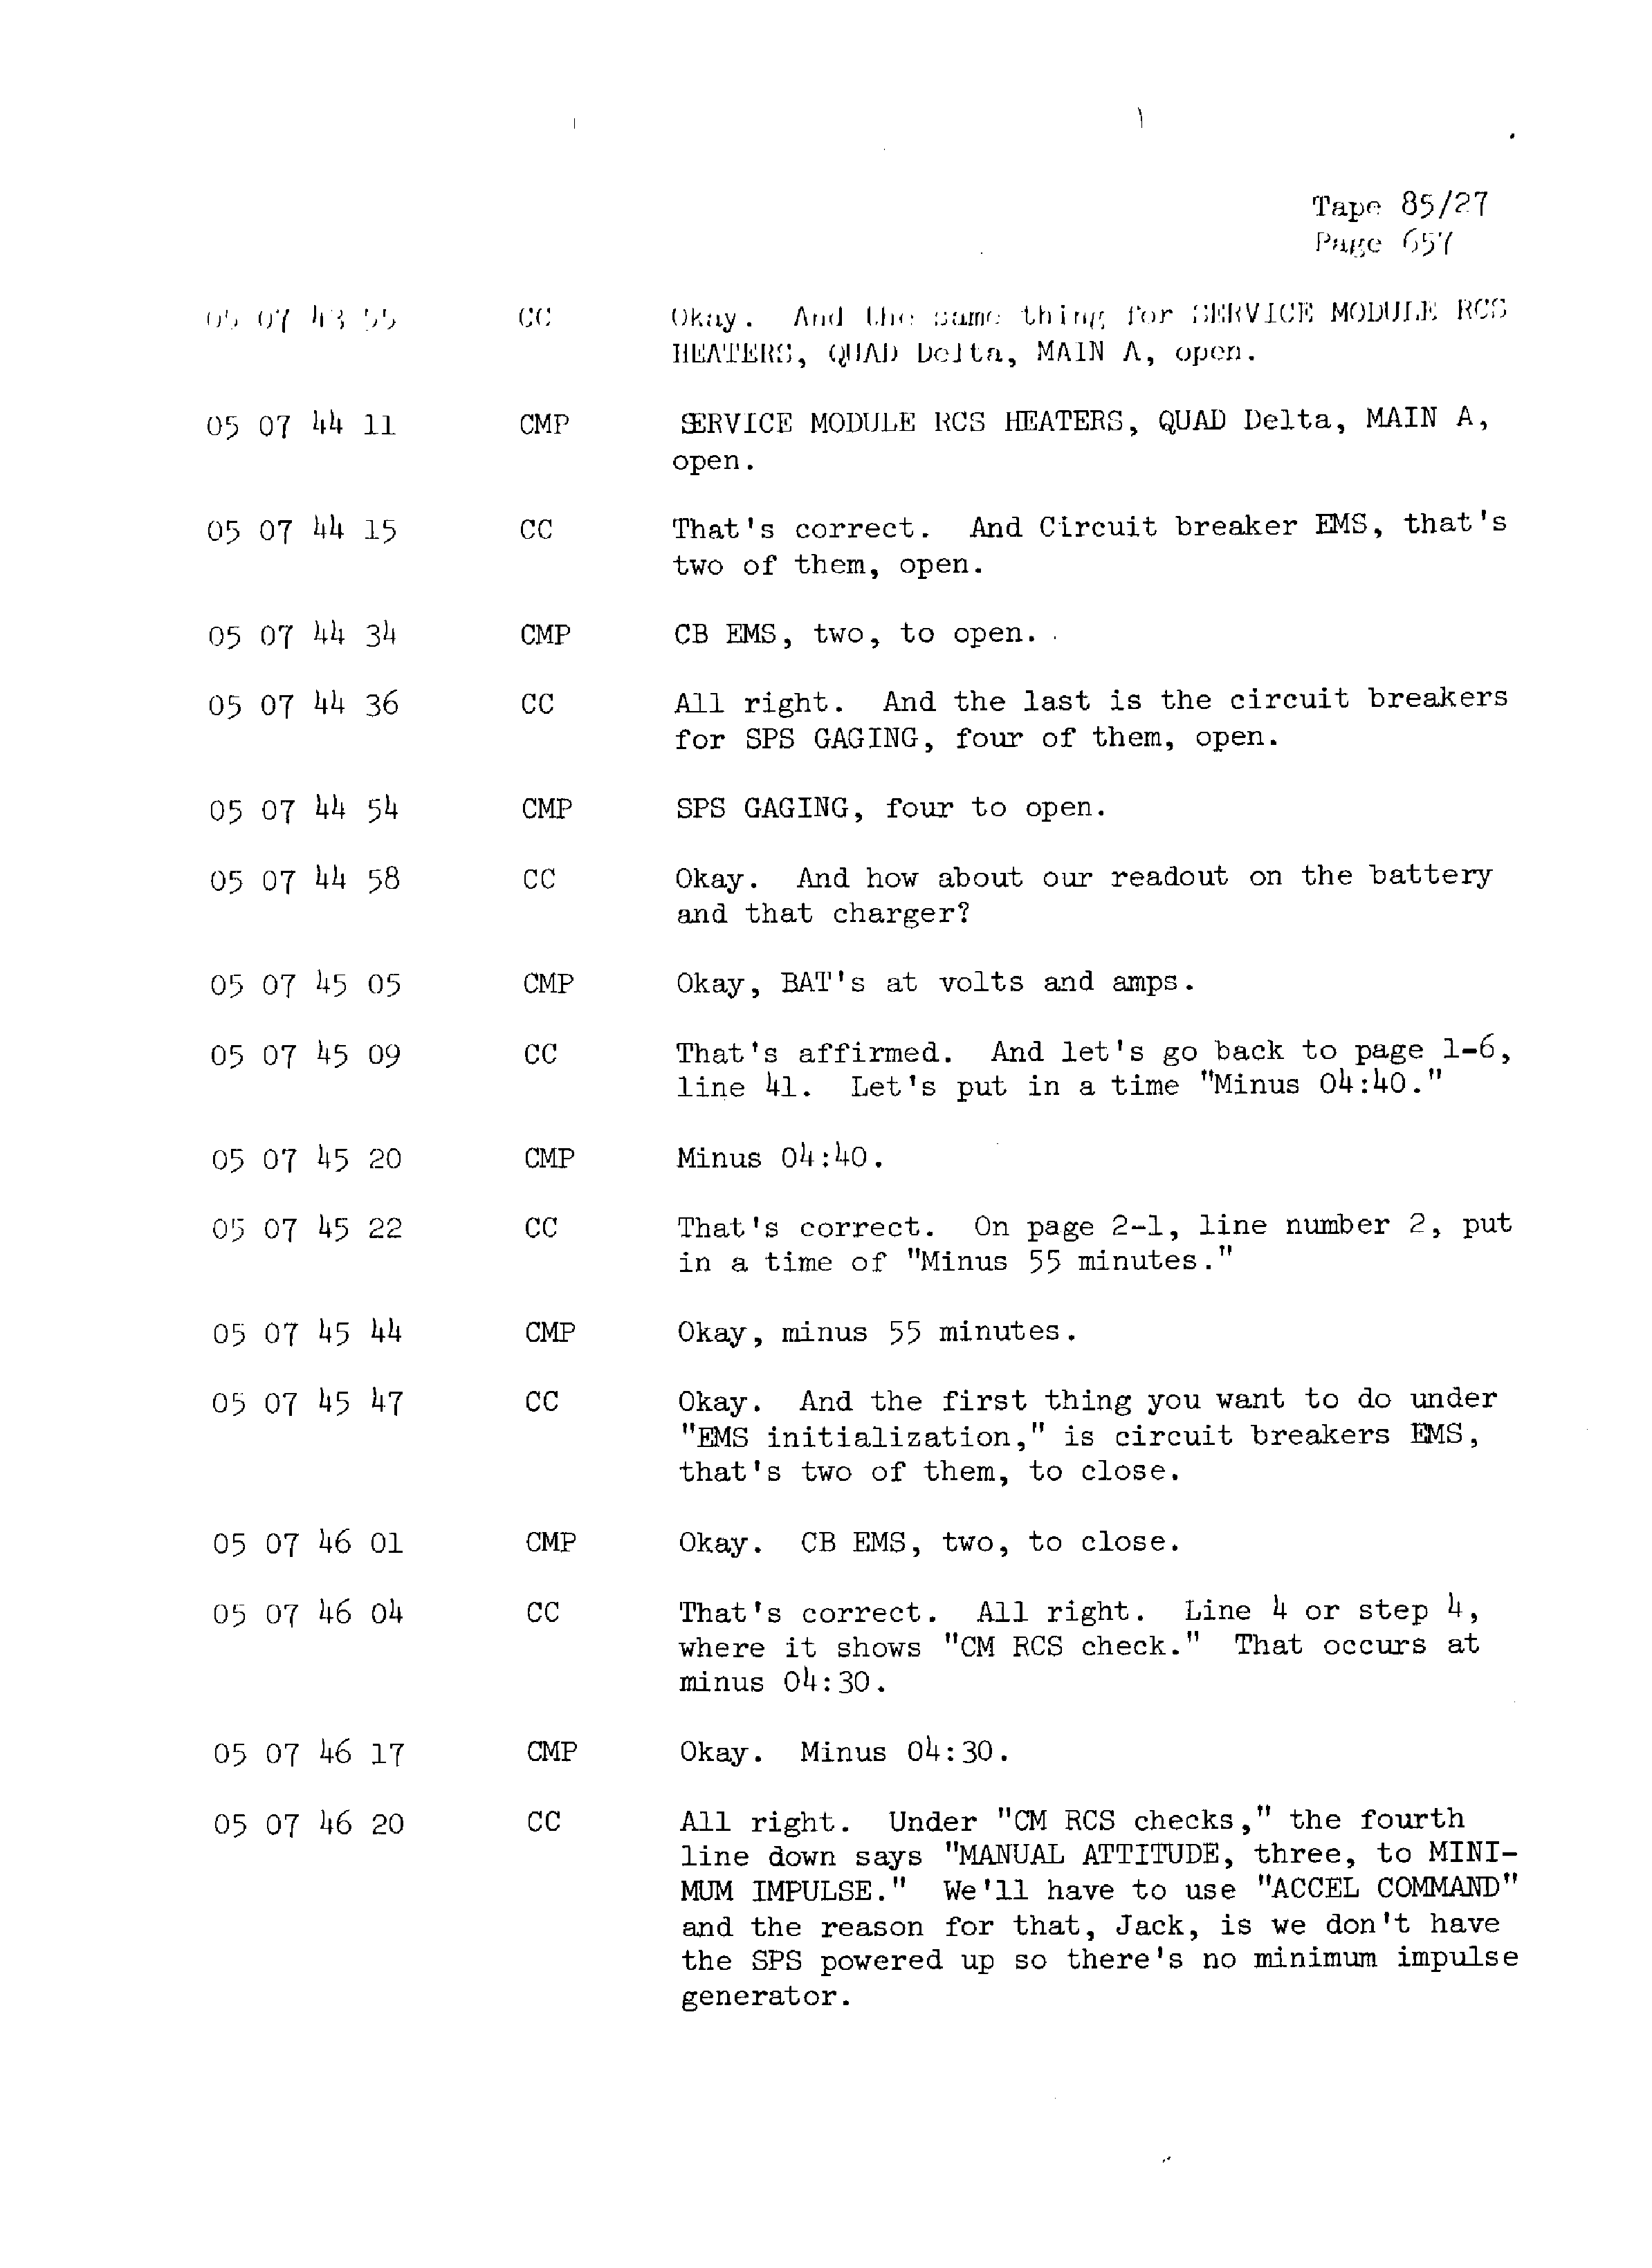 Page 664 of Apollo 13’s original transcript